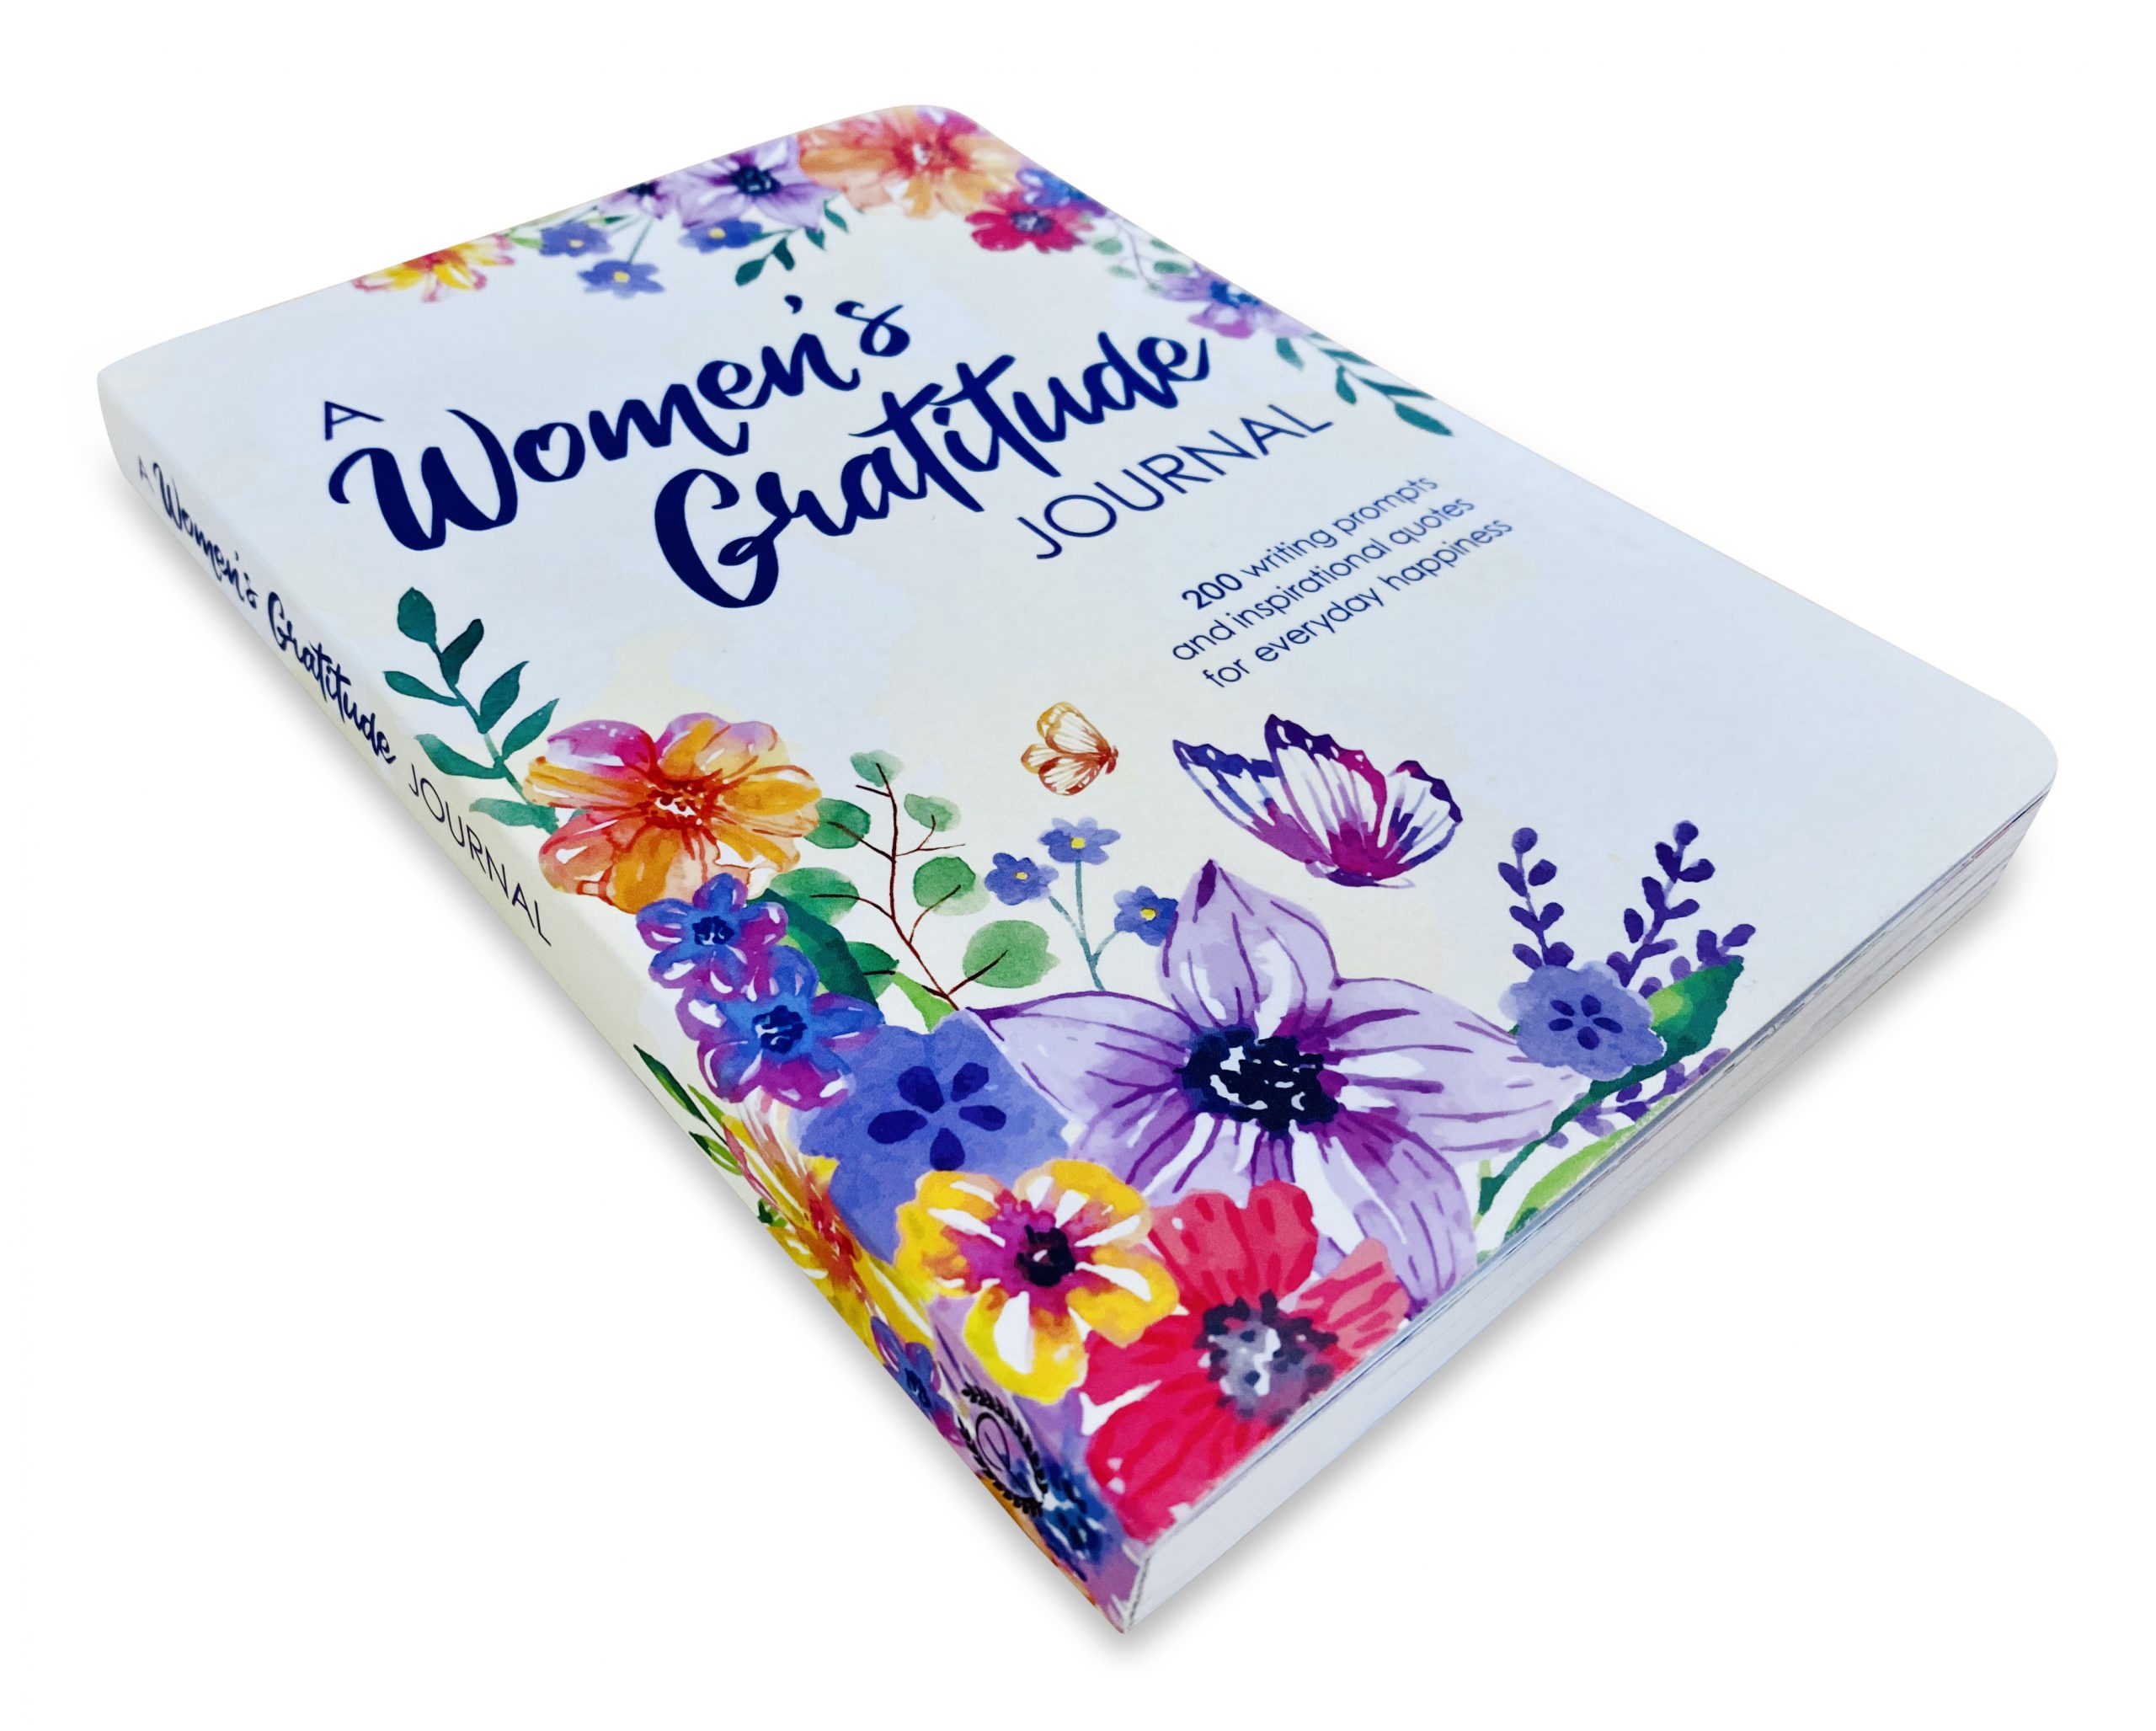 A Women's Gratitude Journal